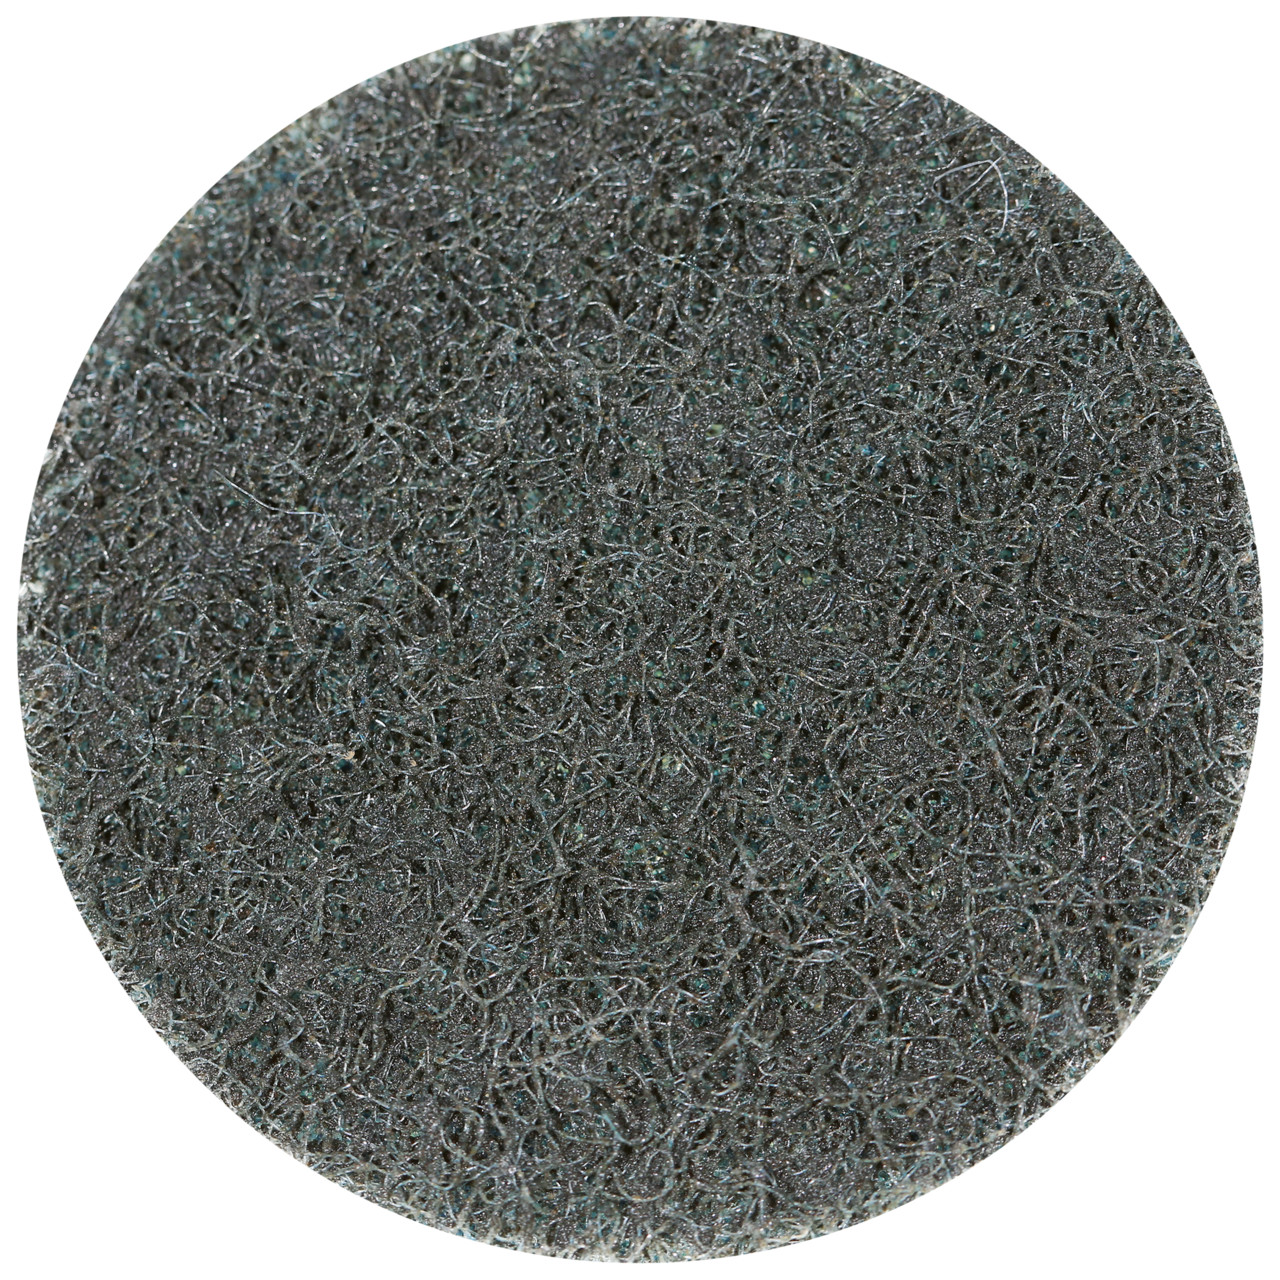 Tyrolit SCM QUICK CHANGE DISC Dimensione 75xS Per acciaio, acciaio inox, metalli non ferrosi, plastica e legno, MOLTO FINE, forma: QDISC, art. 112599